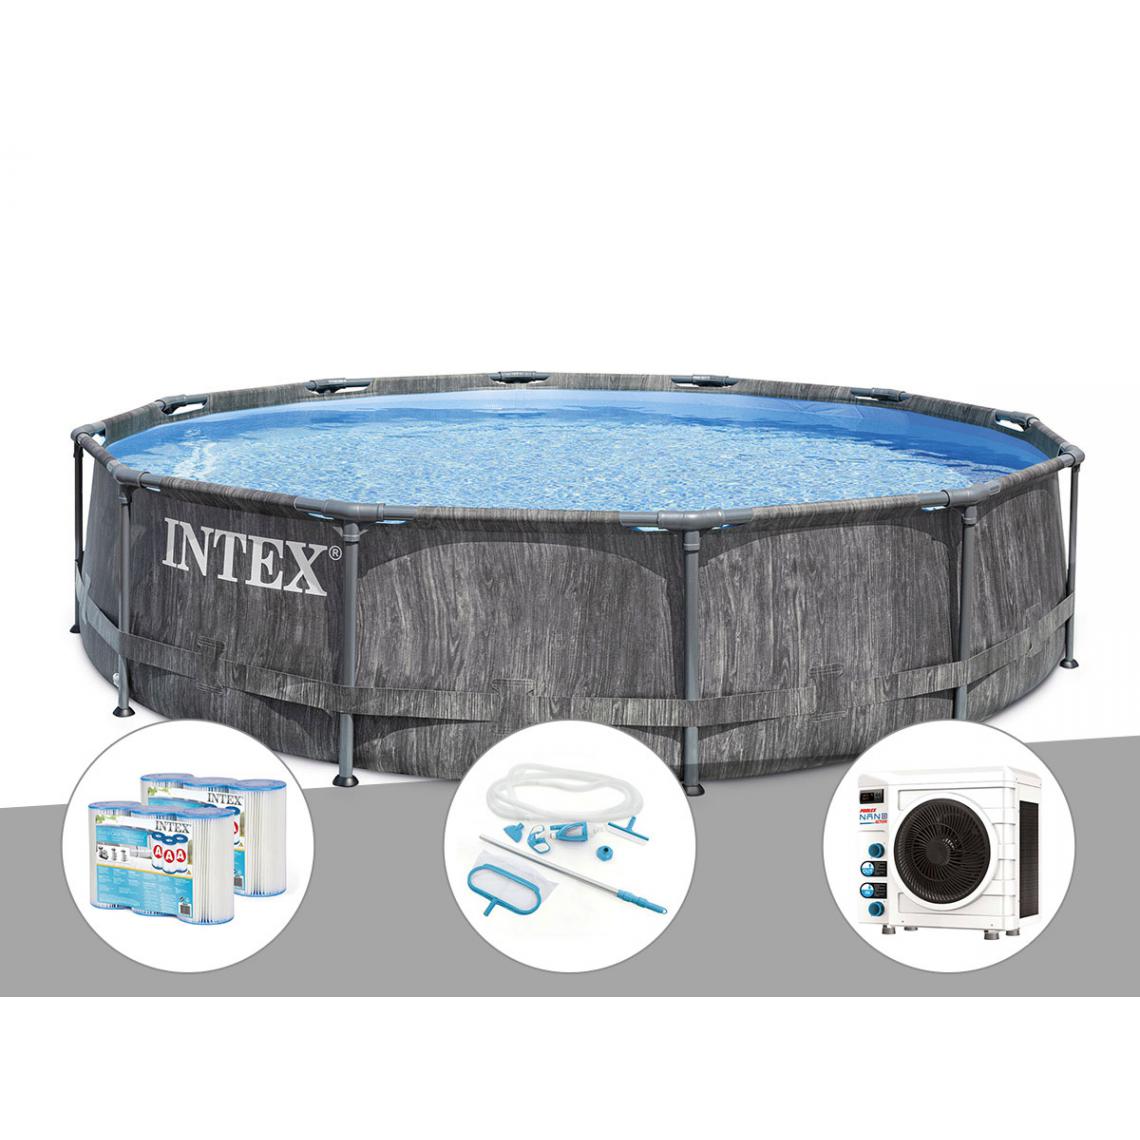 Intex - Kit piscine tubulaire Intex Baltik ronde 5,49 x 1,22 m + 6 cartouches de filtration + Kit d'entretien + Pompe à chaleur - Piscine Tubulaire